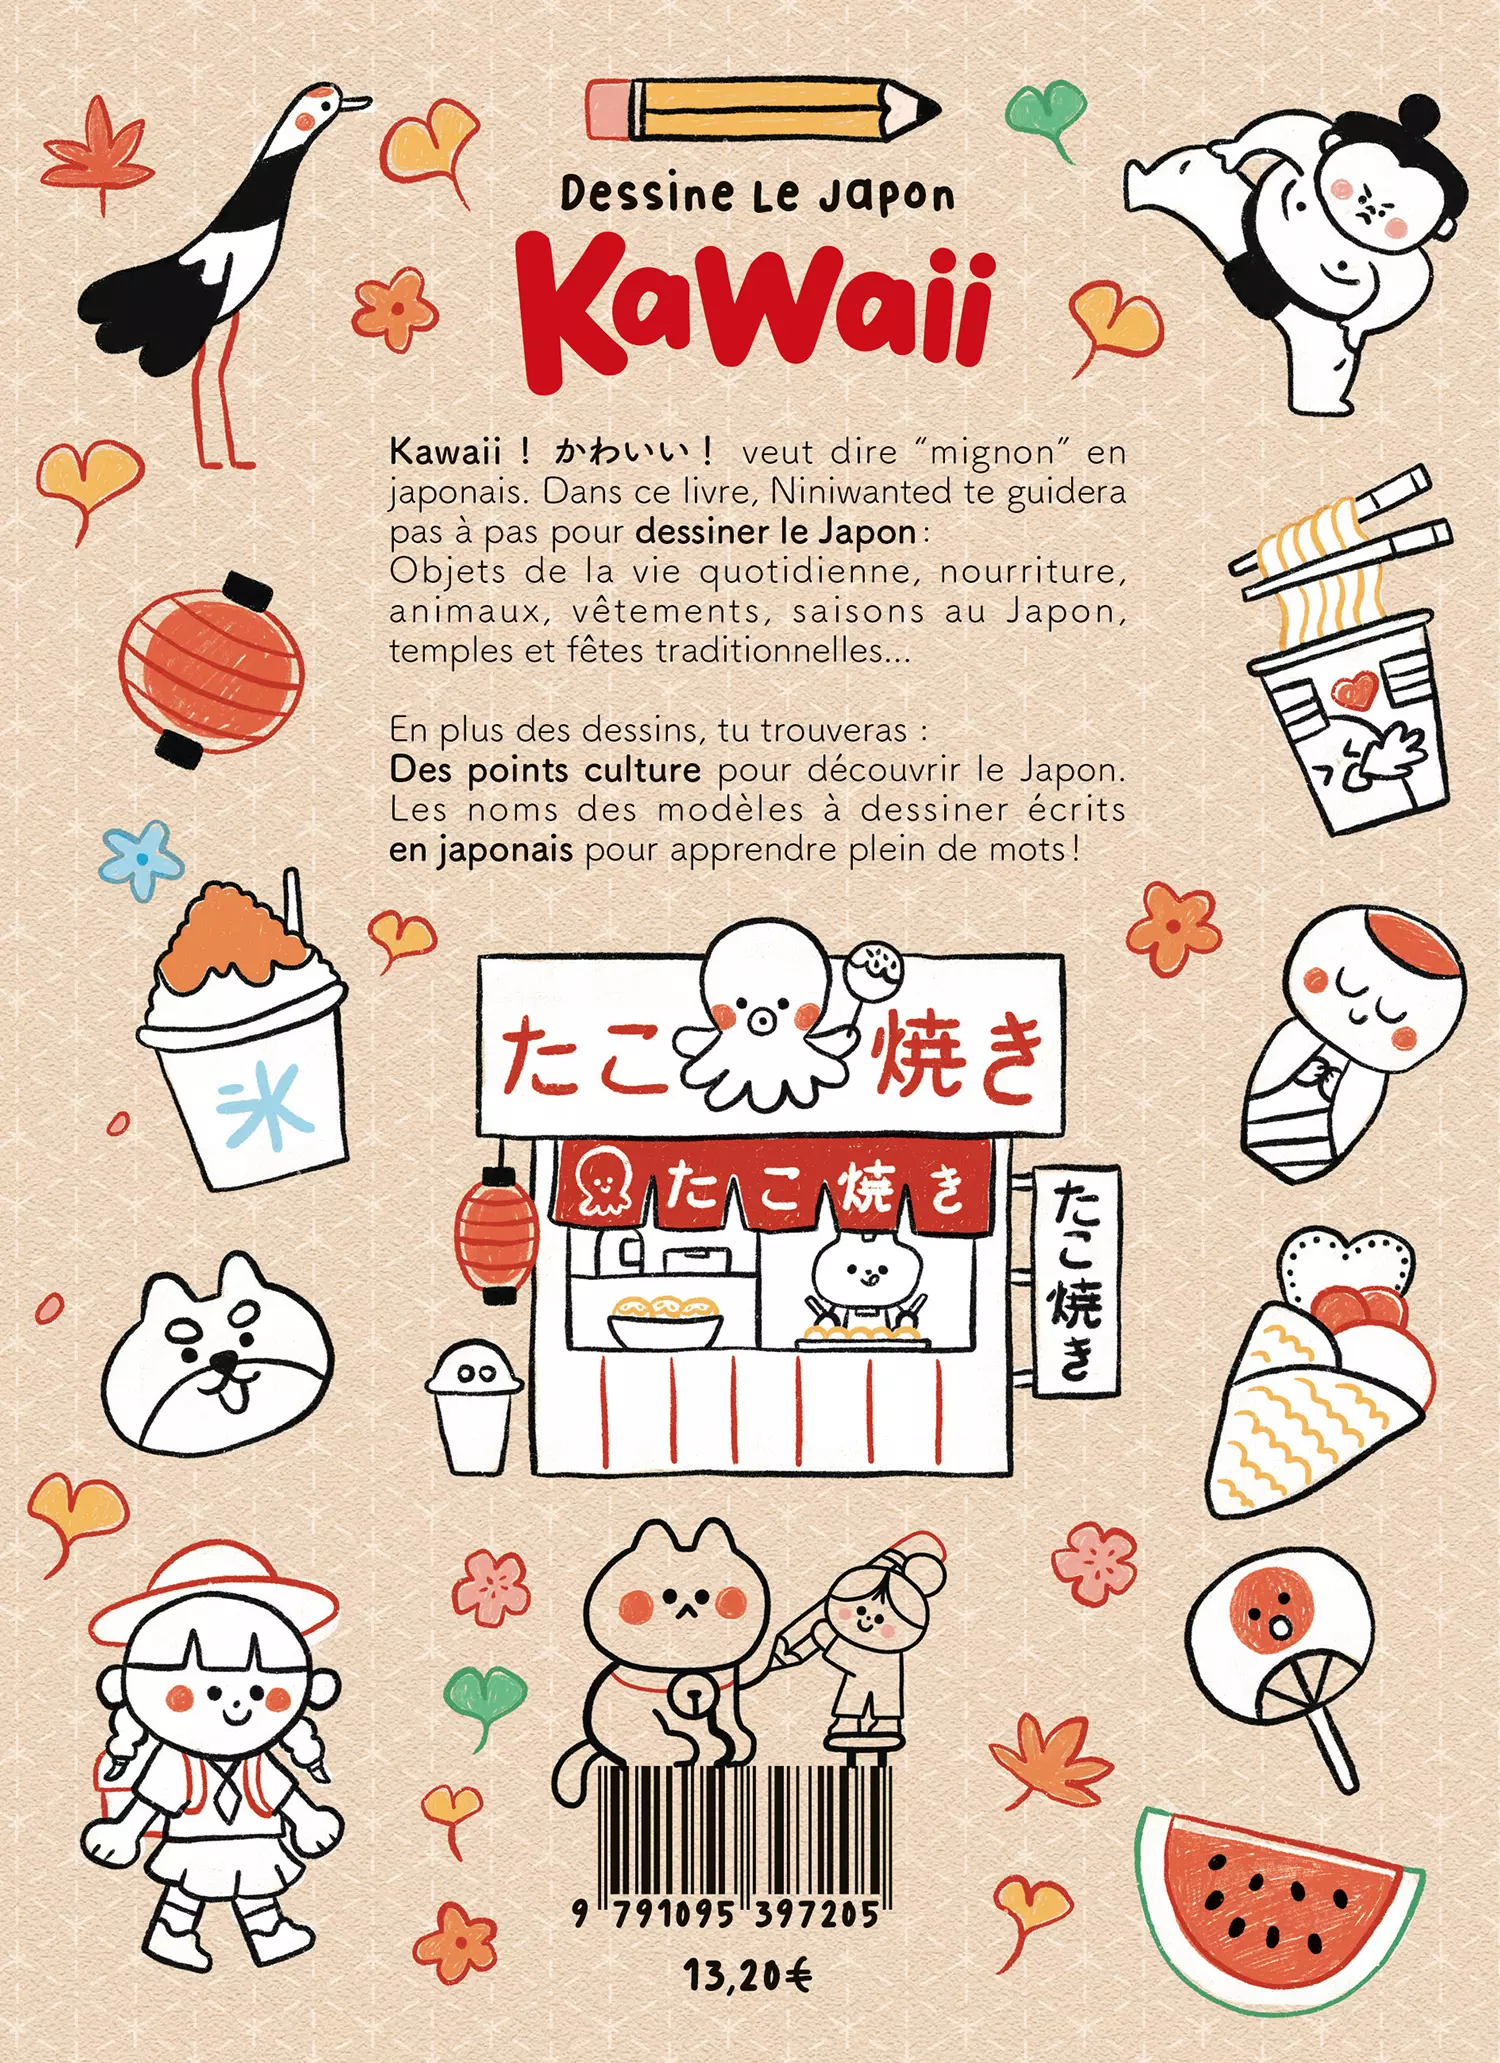 Dessine le Japon Kawaii • Editions Issekinicho